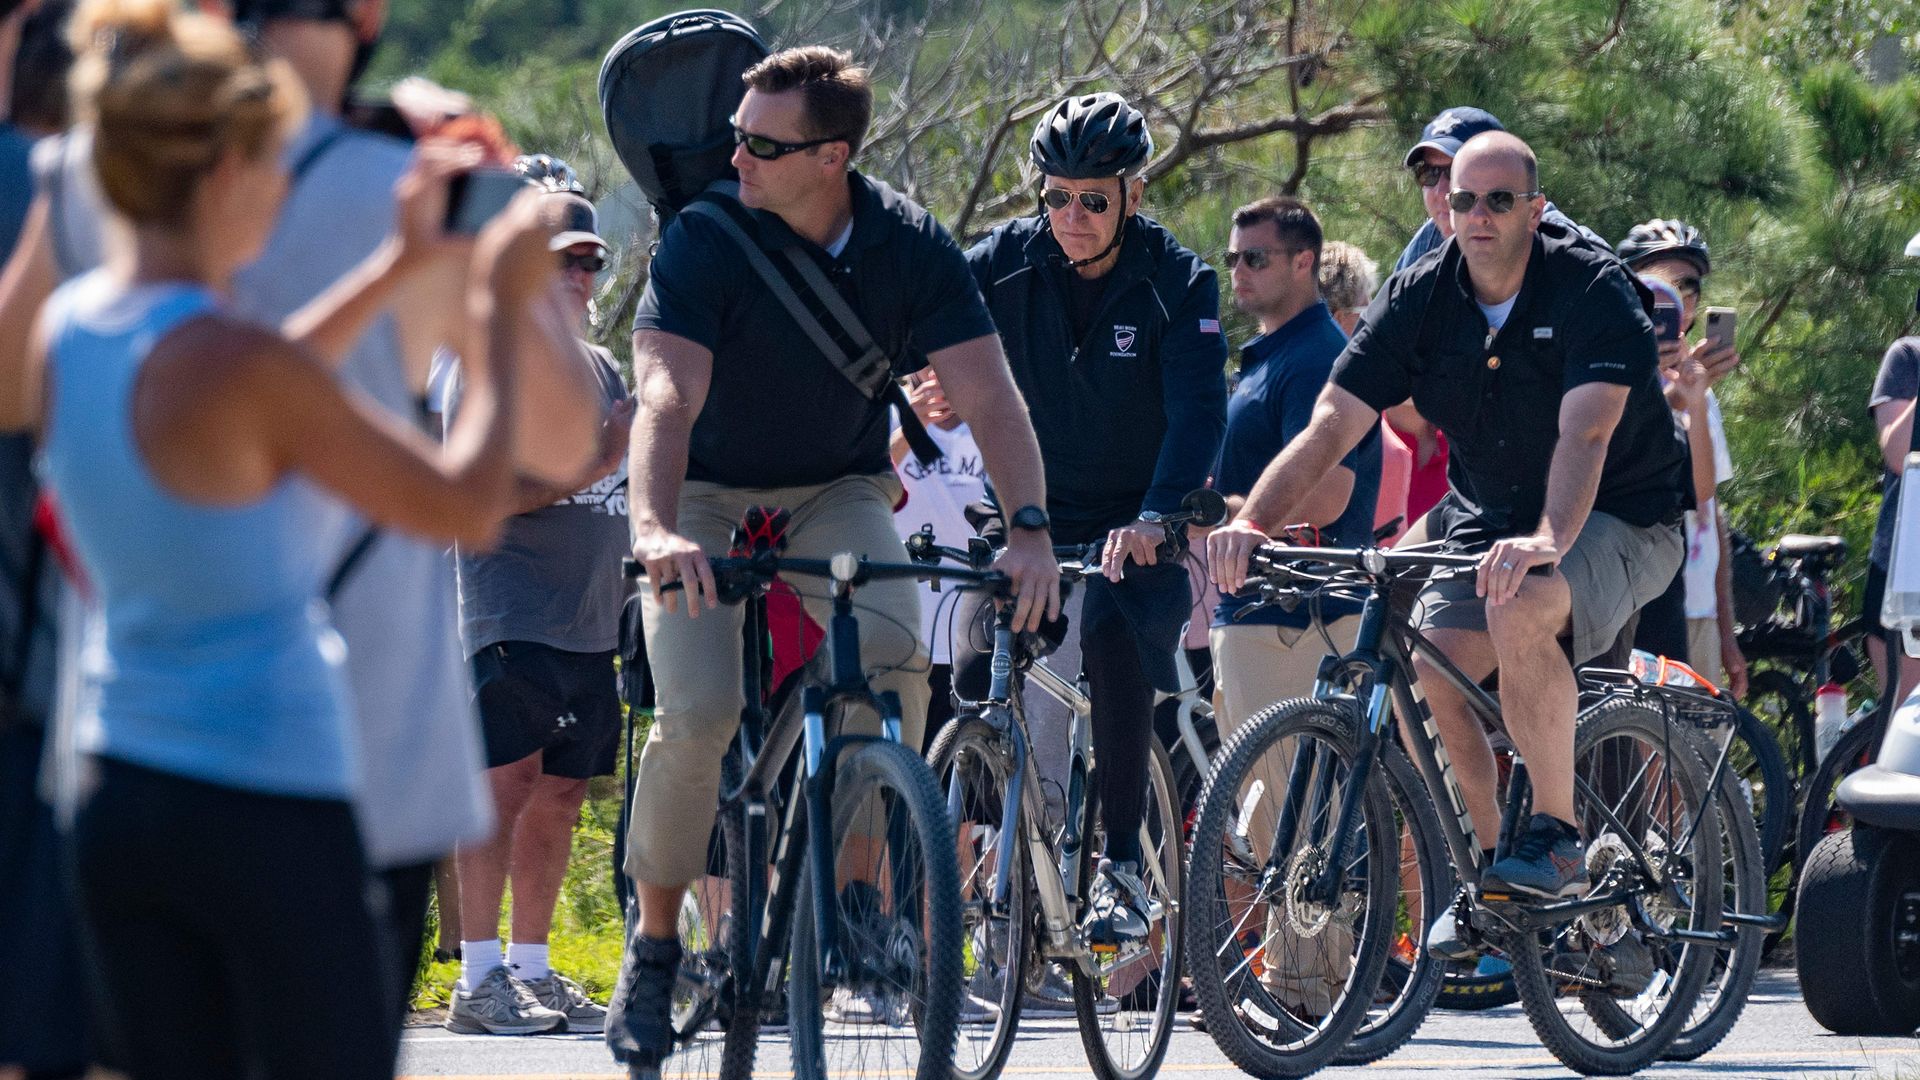 President Biden is seen taking a bike ride flanked by Secret Service agents.